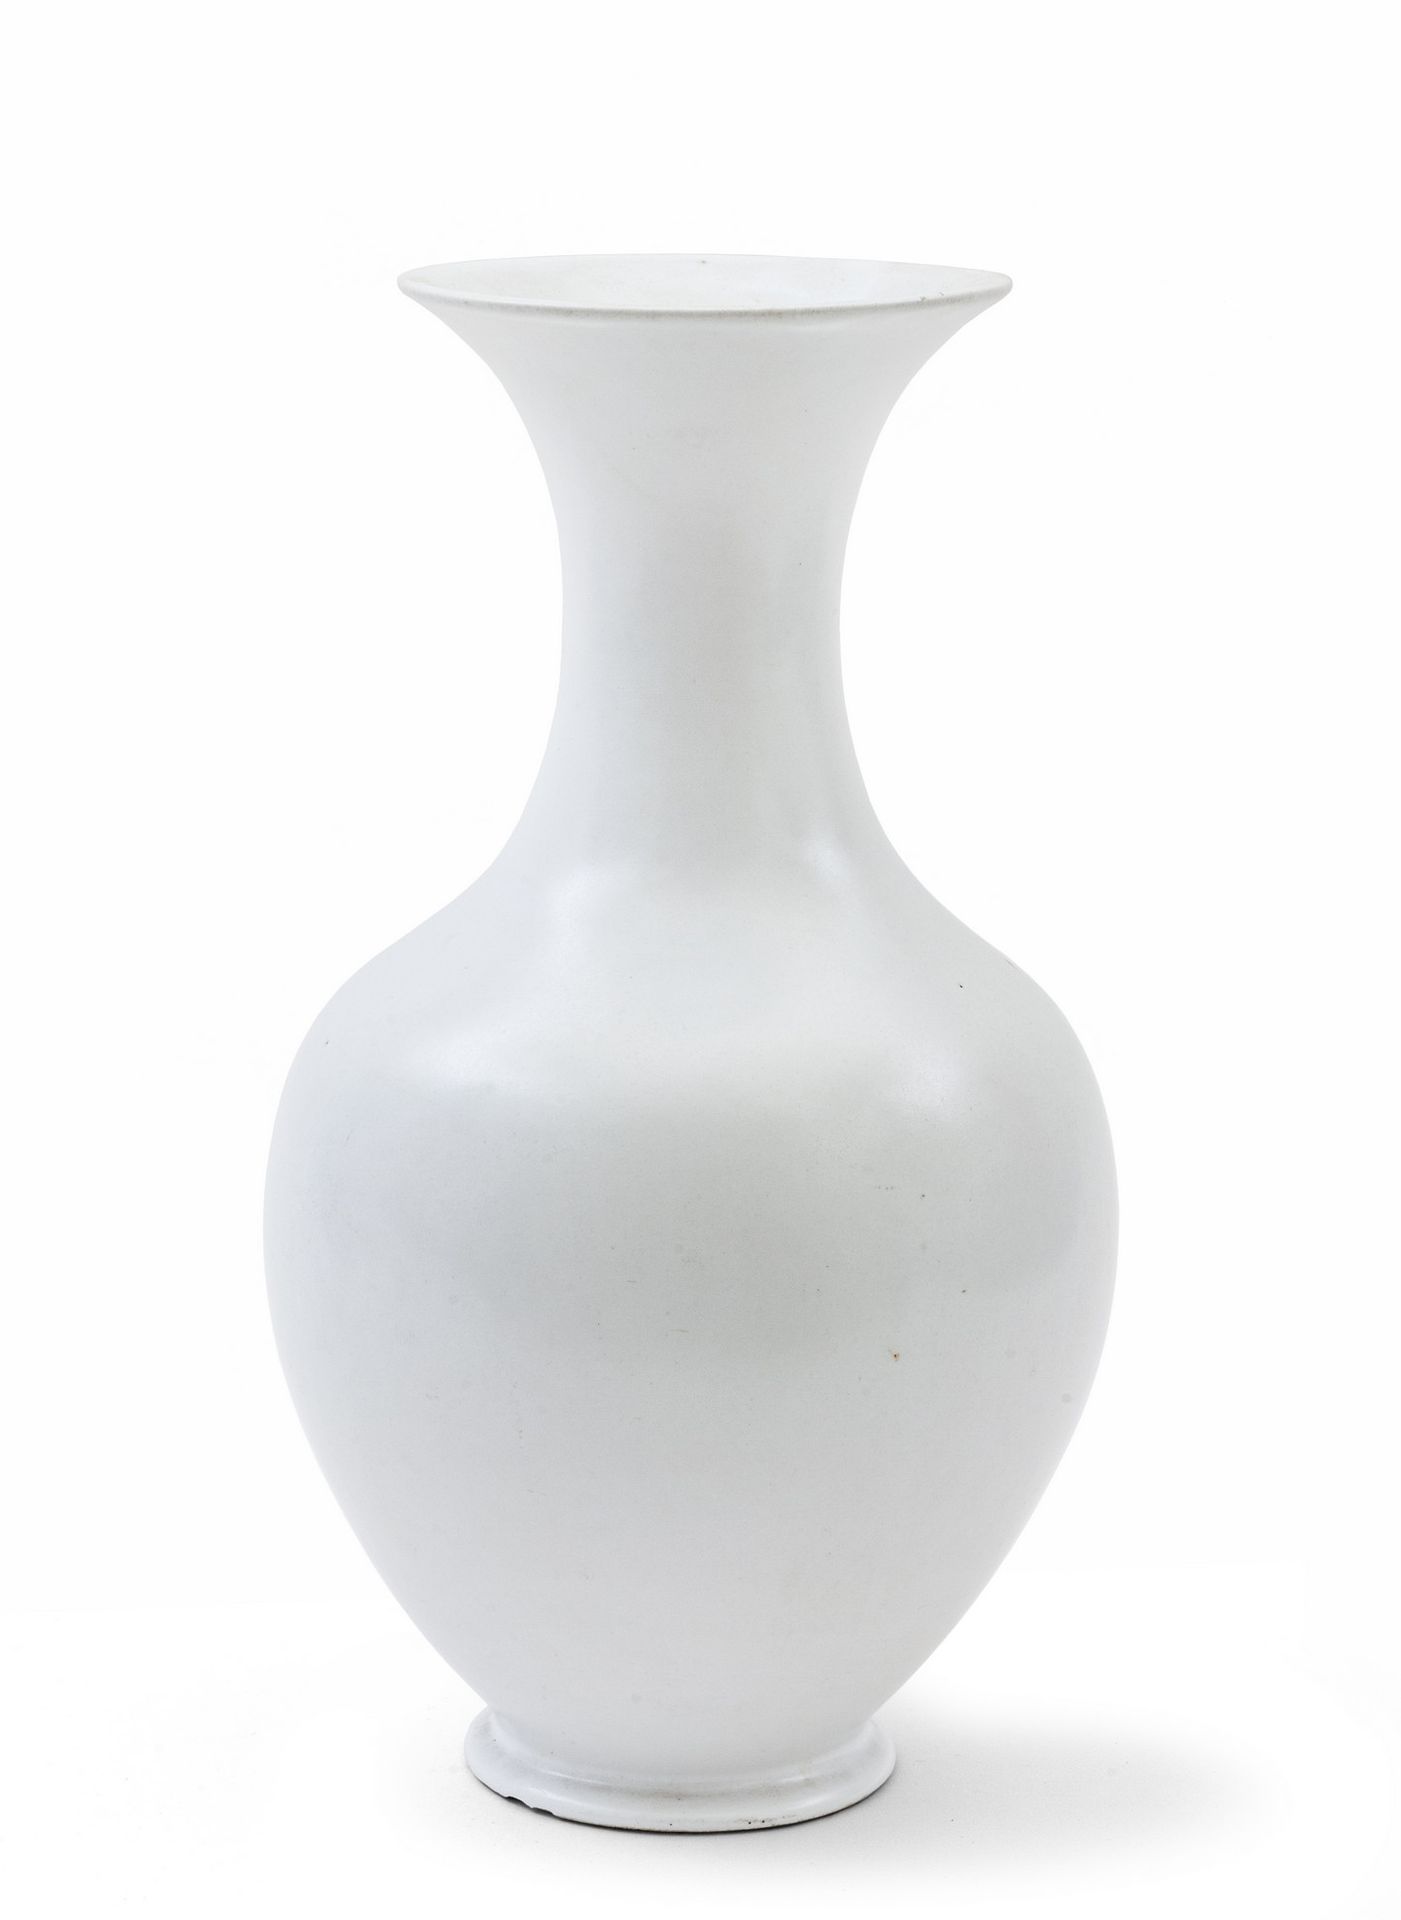 ANDLOVIZ GUIDO GUIDO ANDLOVIZ
Eine Vase Modell "655" für S.C.I. (Società Ceramic&hellip;